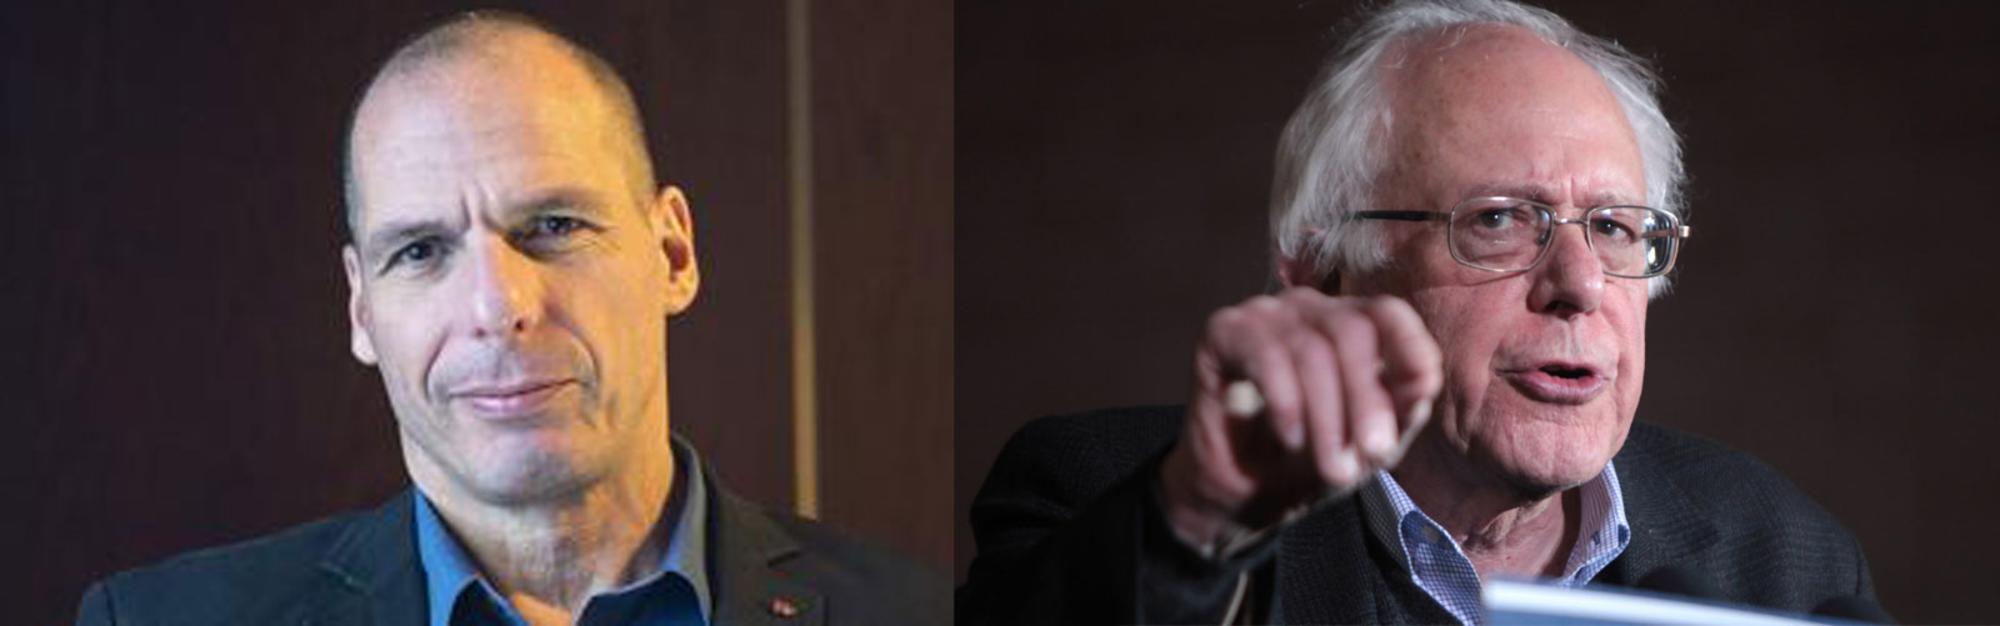 Varoufakis y Sanders